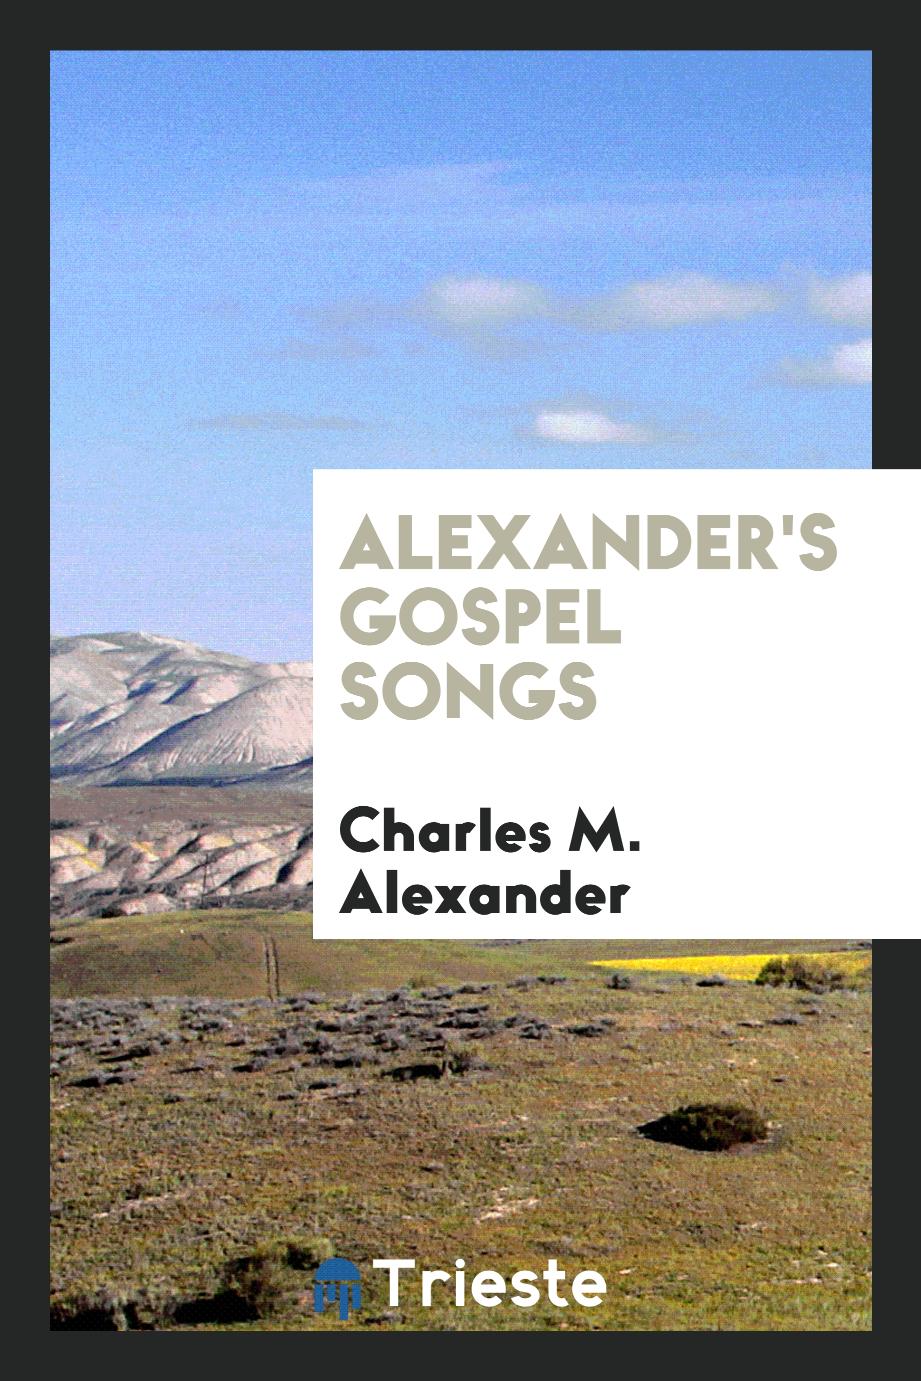 Alexander's Gospel Songs